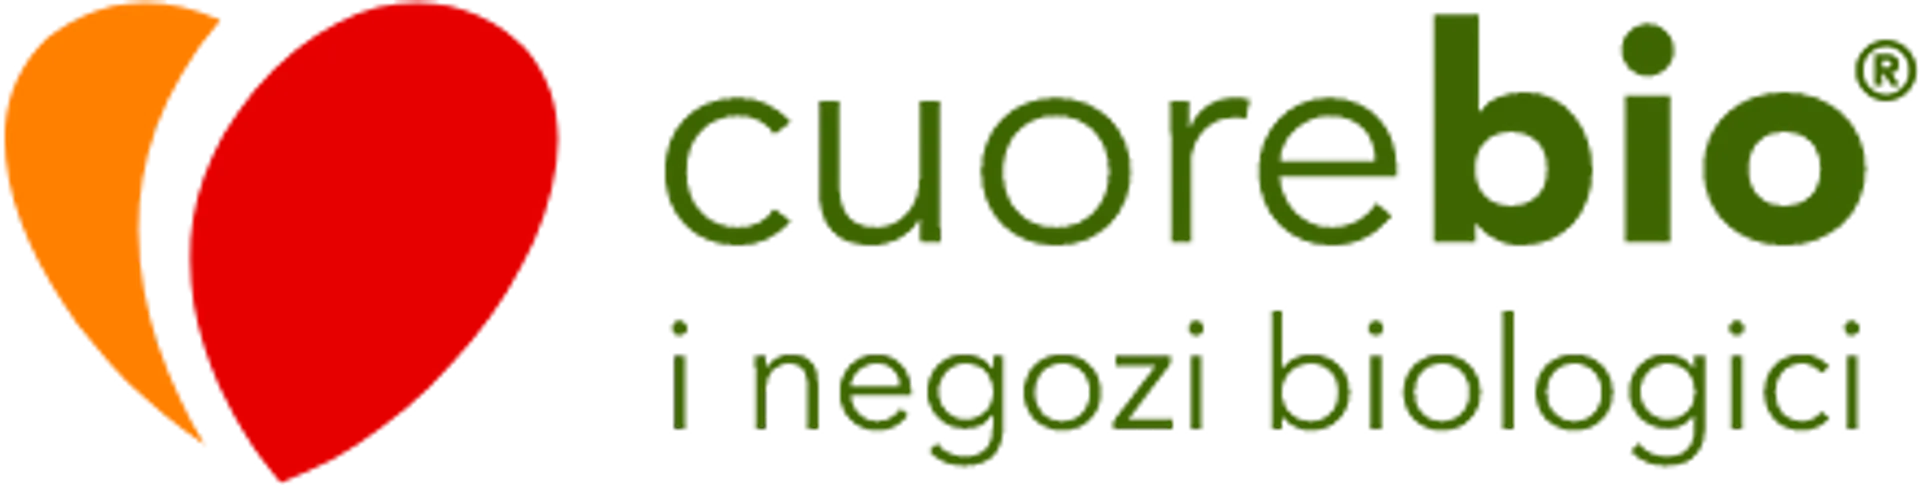 CUOREBIO logo